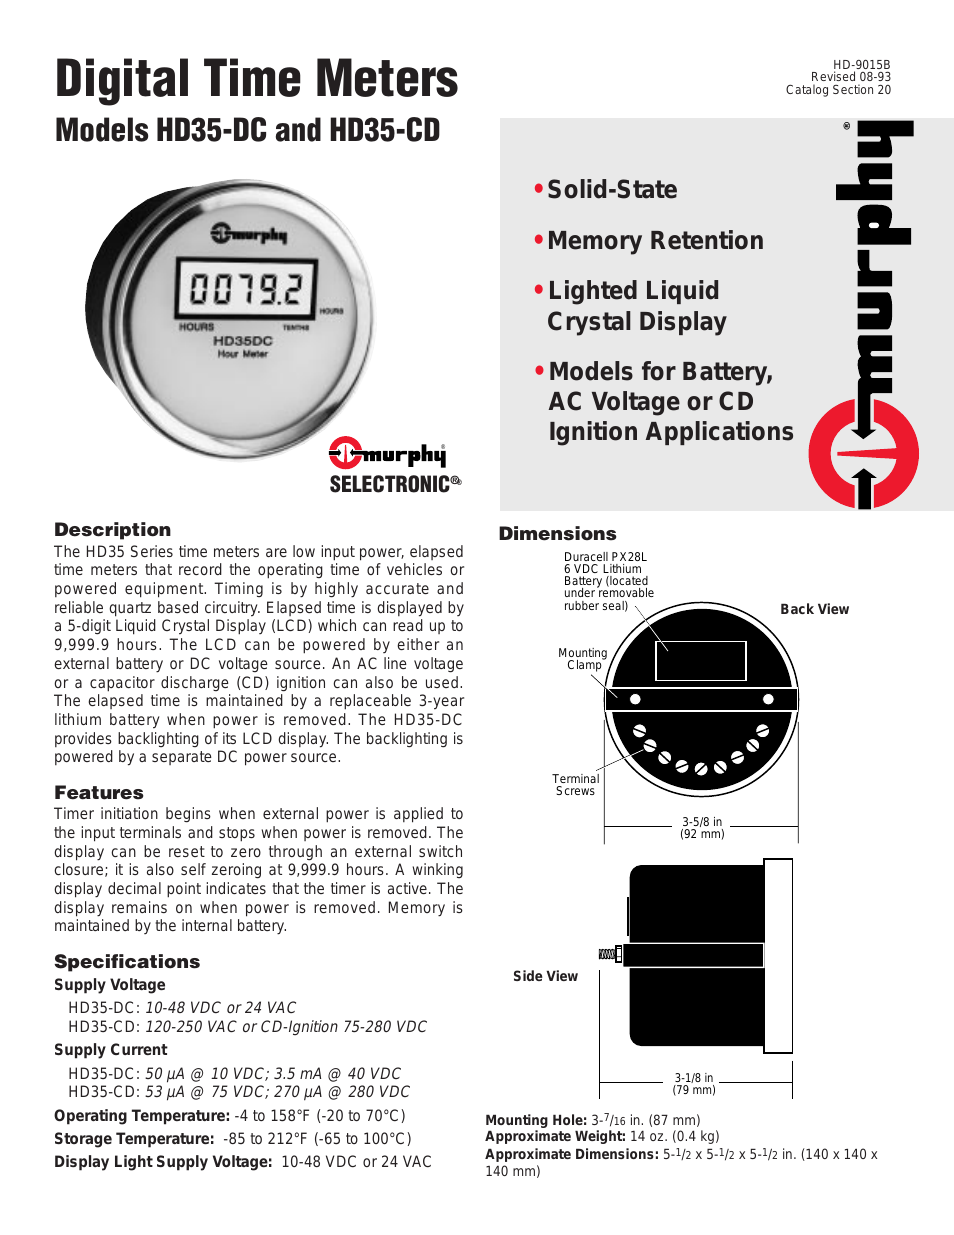 Digital Time Meters HD35-CD